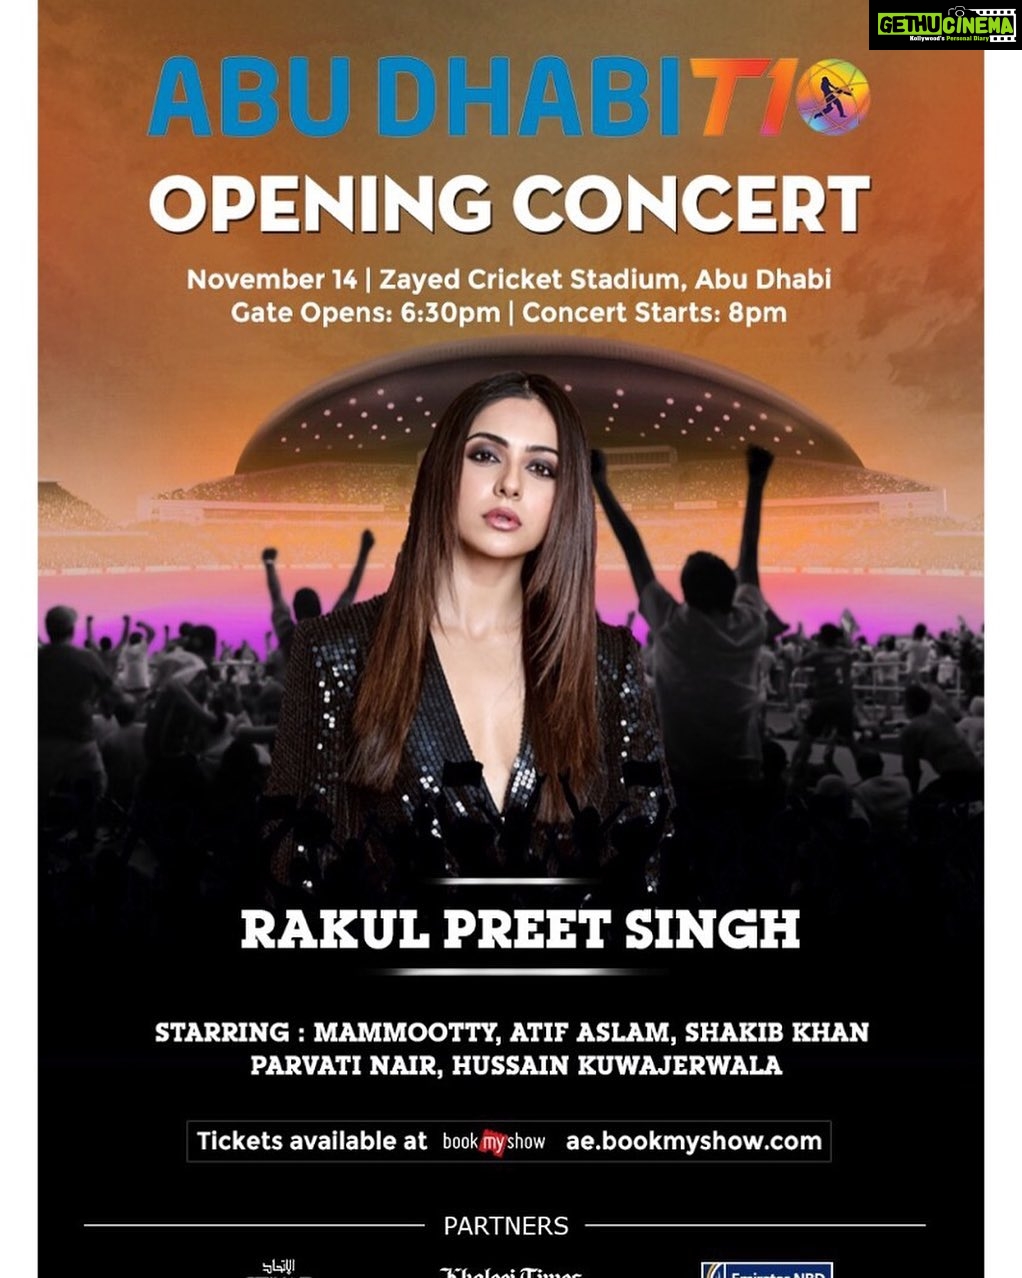 Rakul Preet Singh Instagram Salaam Uae Excited To Perform At The Abu Dhabi T10 Opening